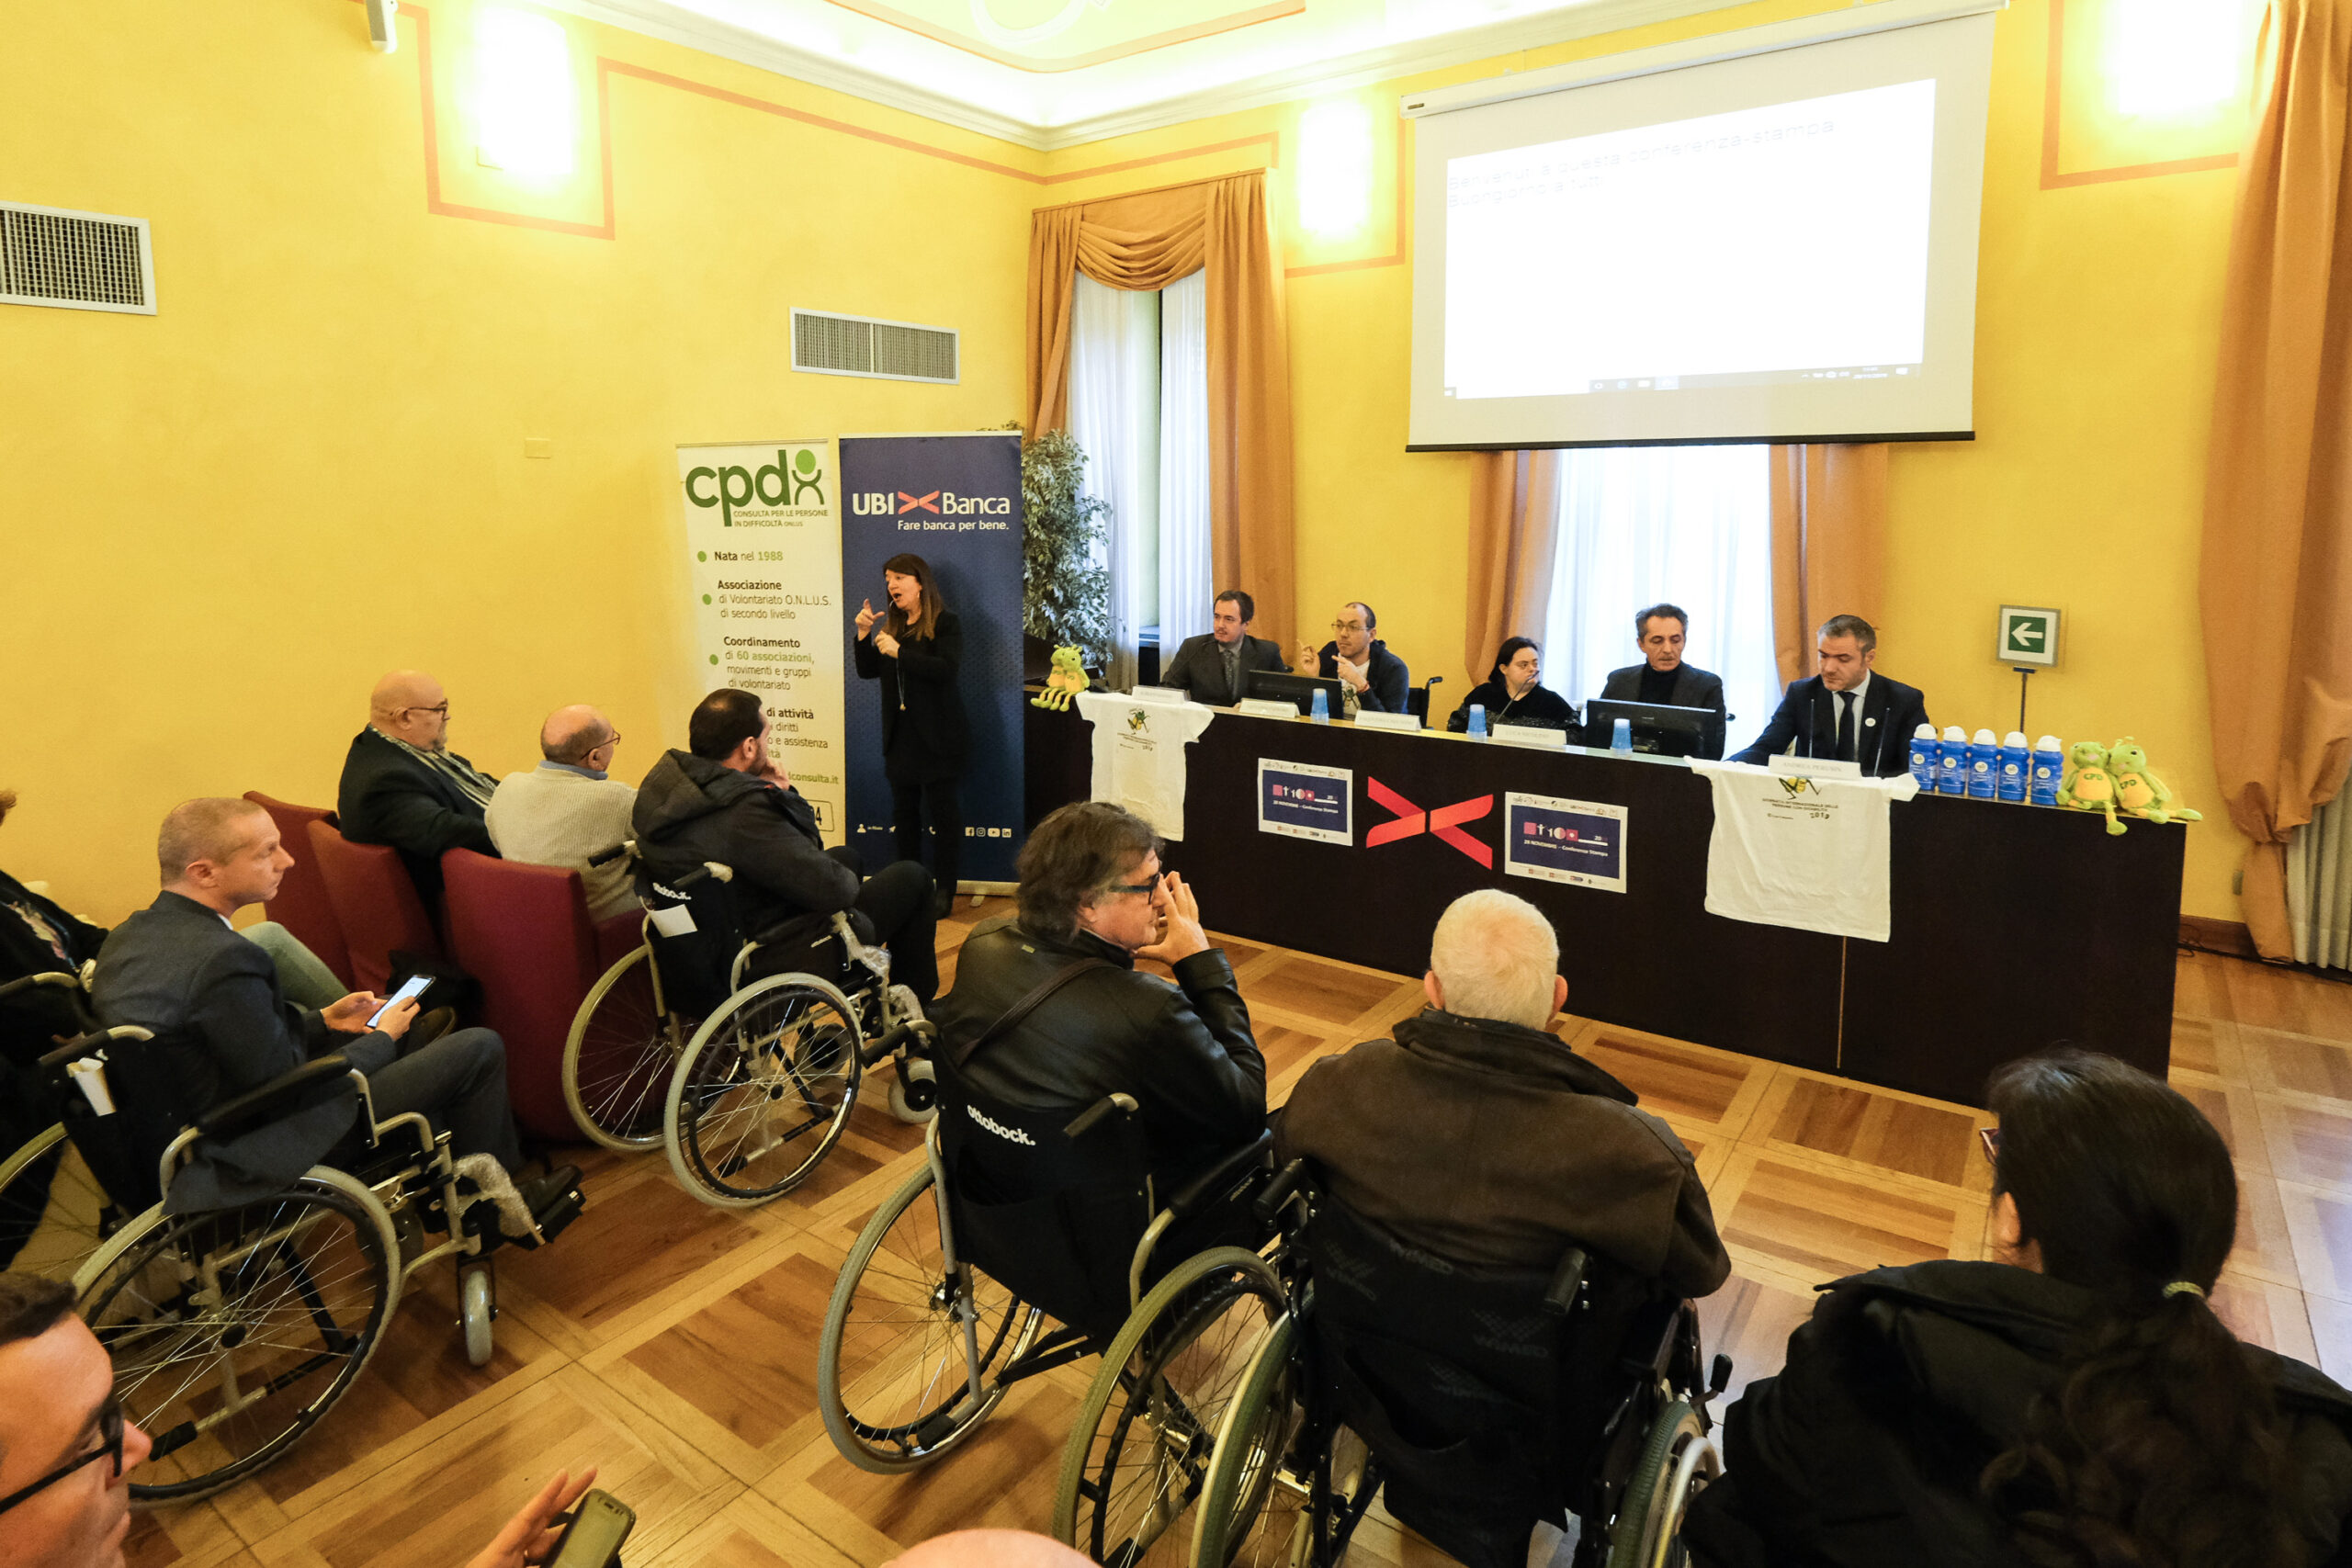 Featured image for “Giornata Internazionale delle Persone con Disabilità”